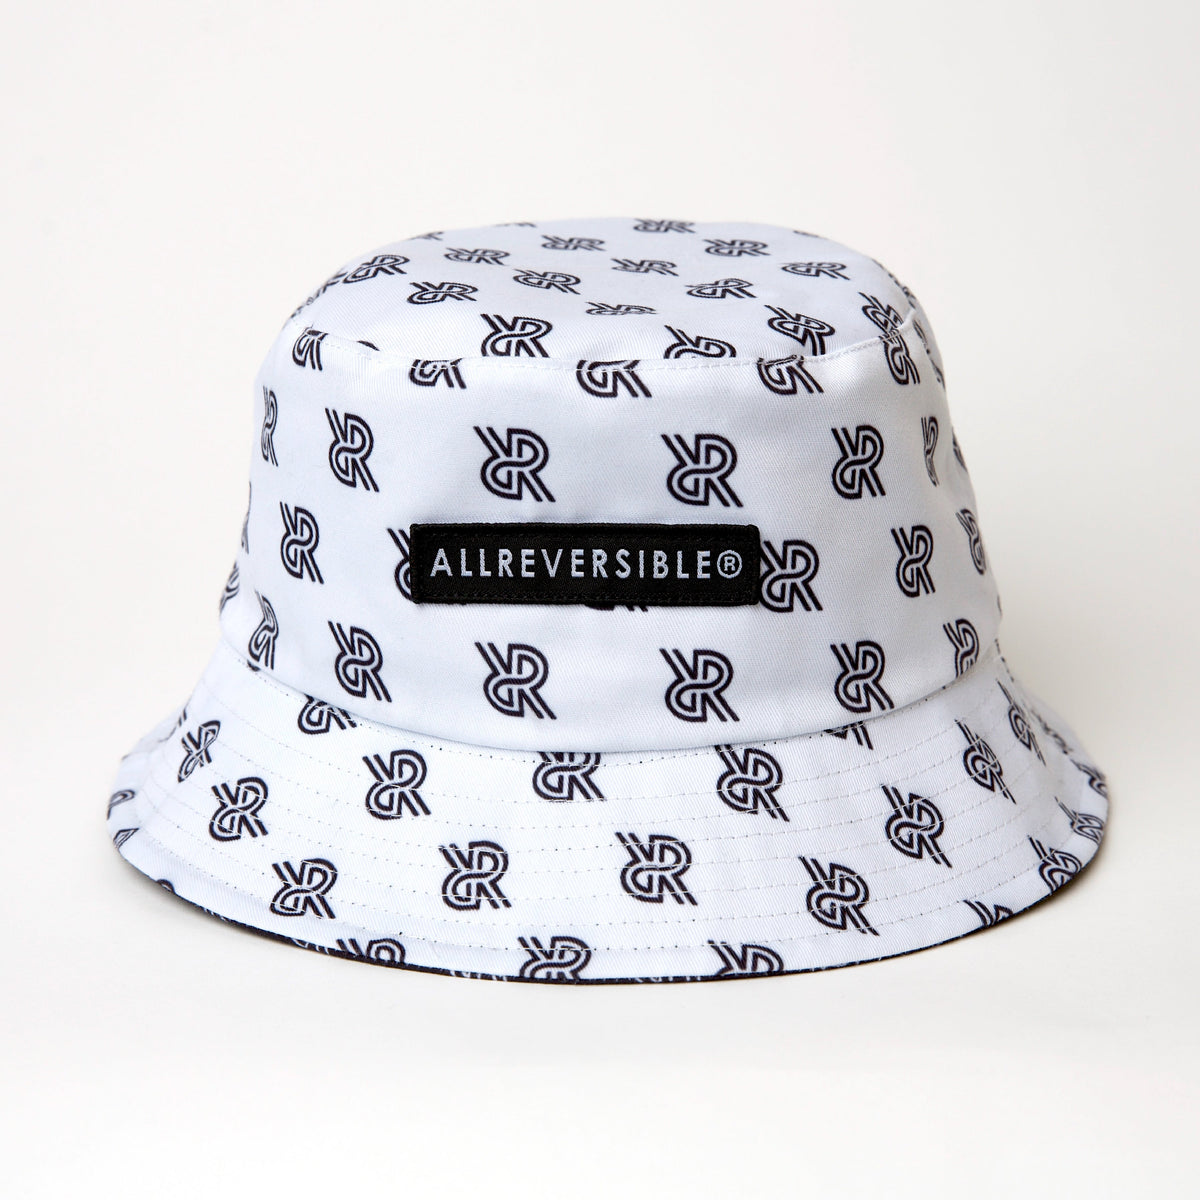 Reversible Bucket Hat - Black and White - ALLREVERSIBLE®